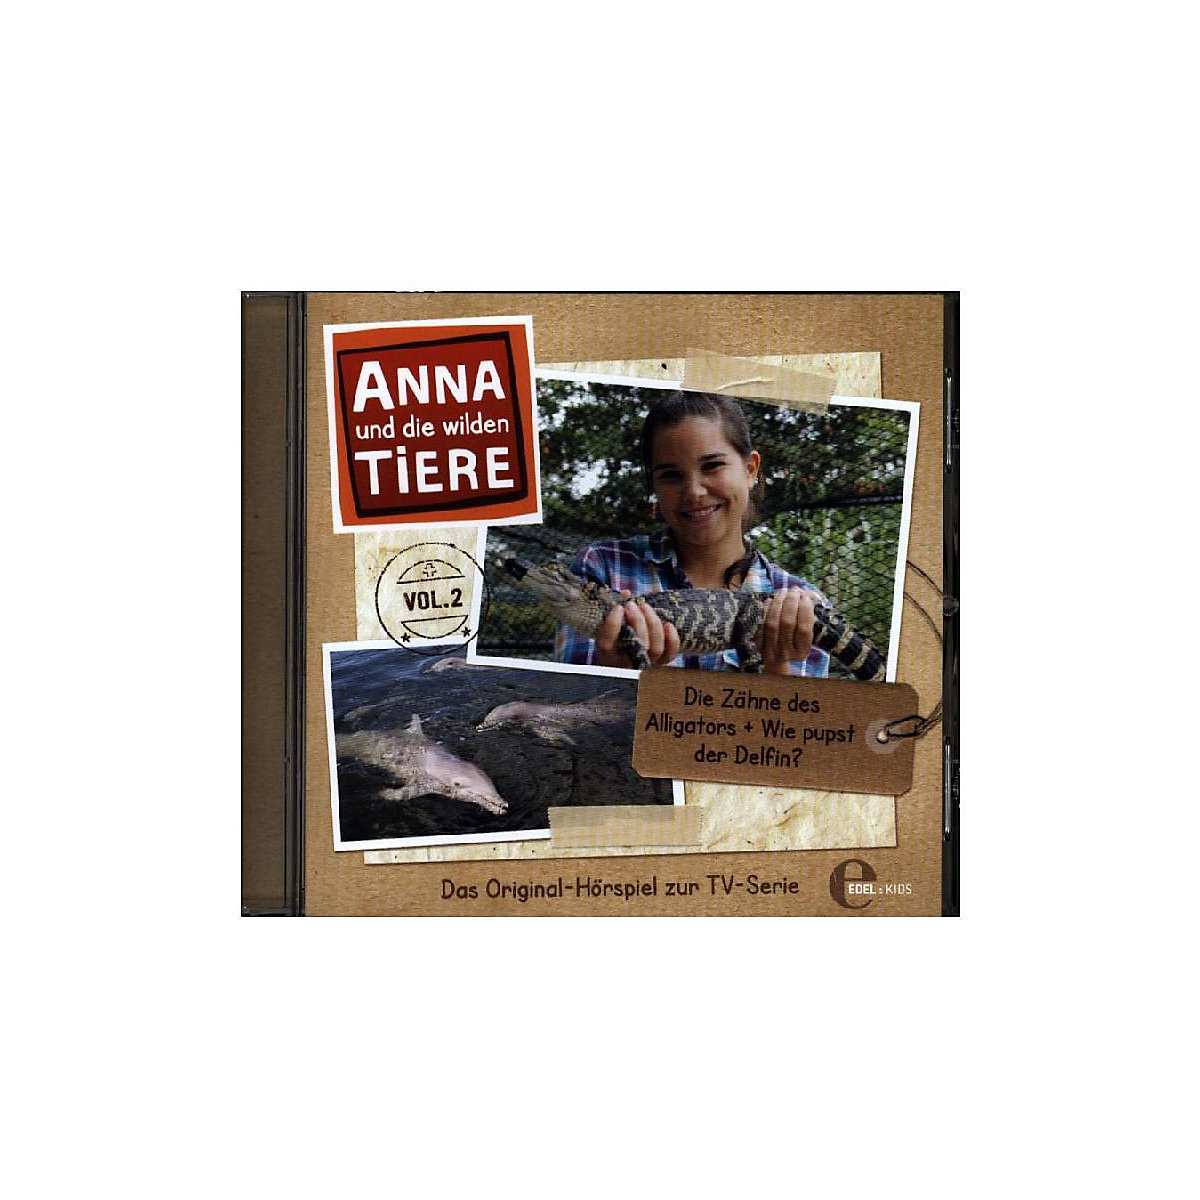 Edel CD Anna und die wilden Tiere 02 Die Zähne des Alligators + Wie pupst ein Delfin?